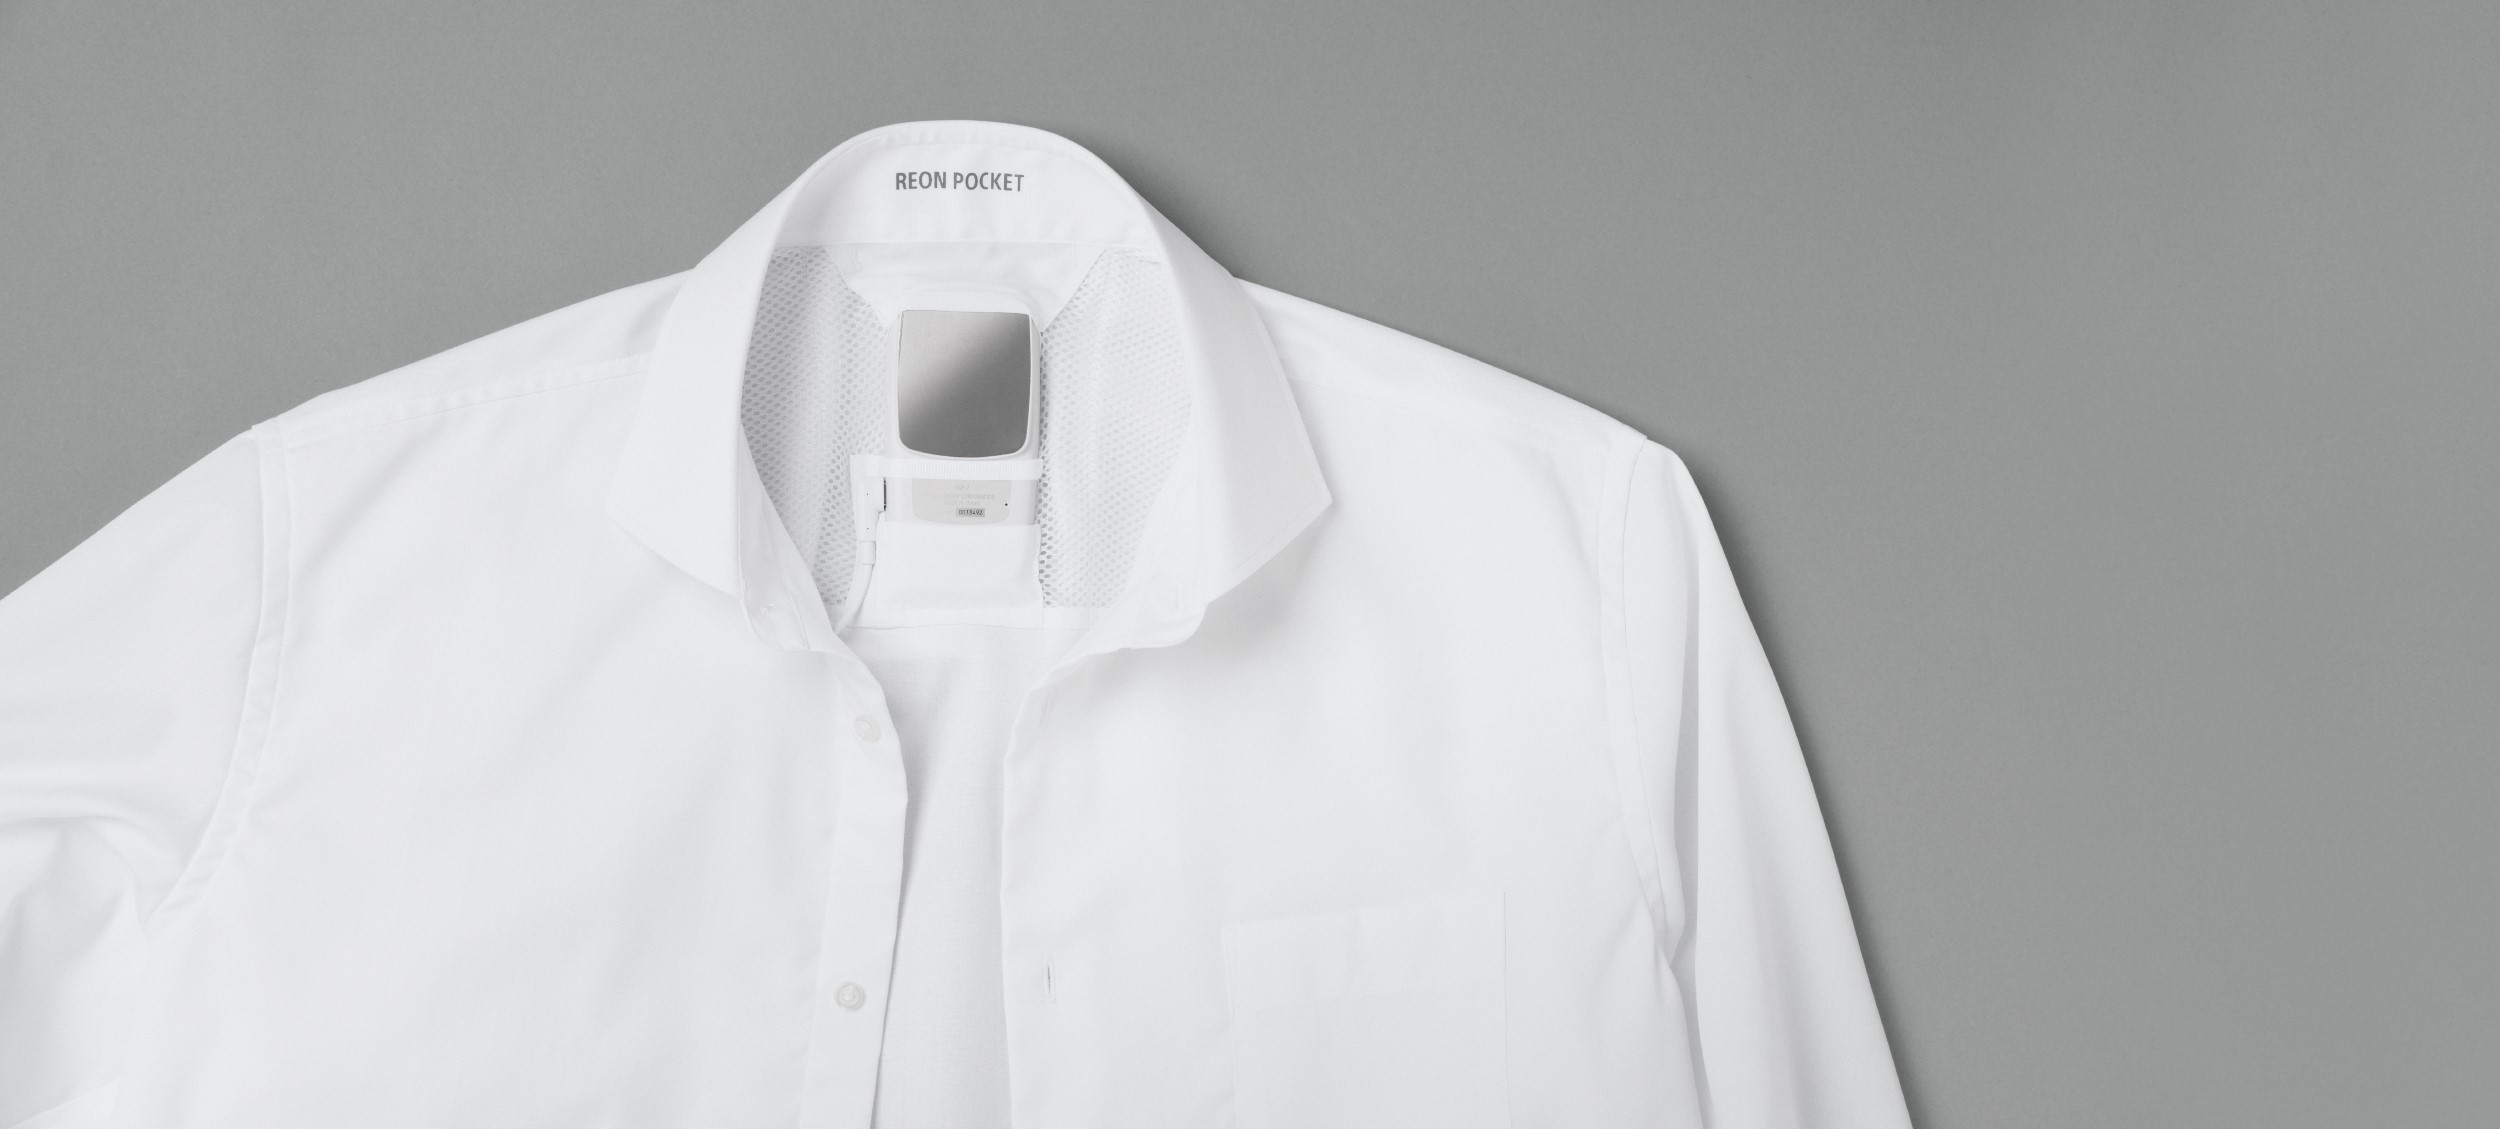 温度設定可能なソニーのウェアラブルサーモデバイス「REON POCKET」専用のビジネスシャツが発売